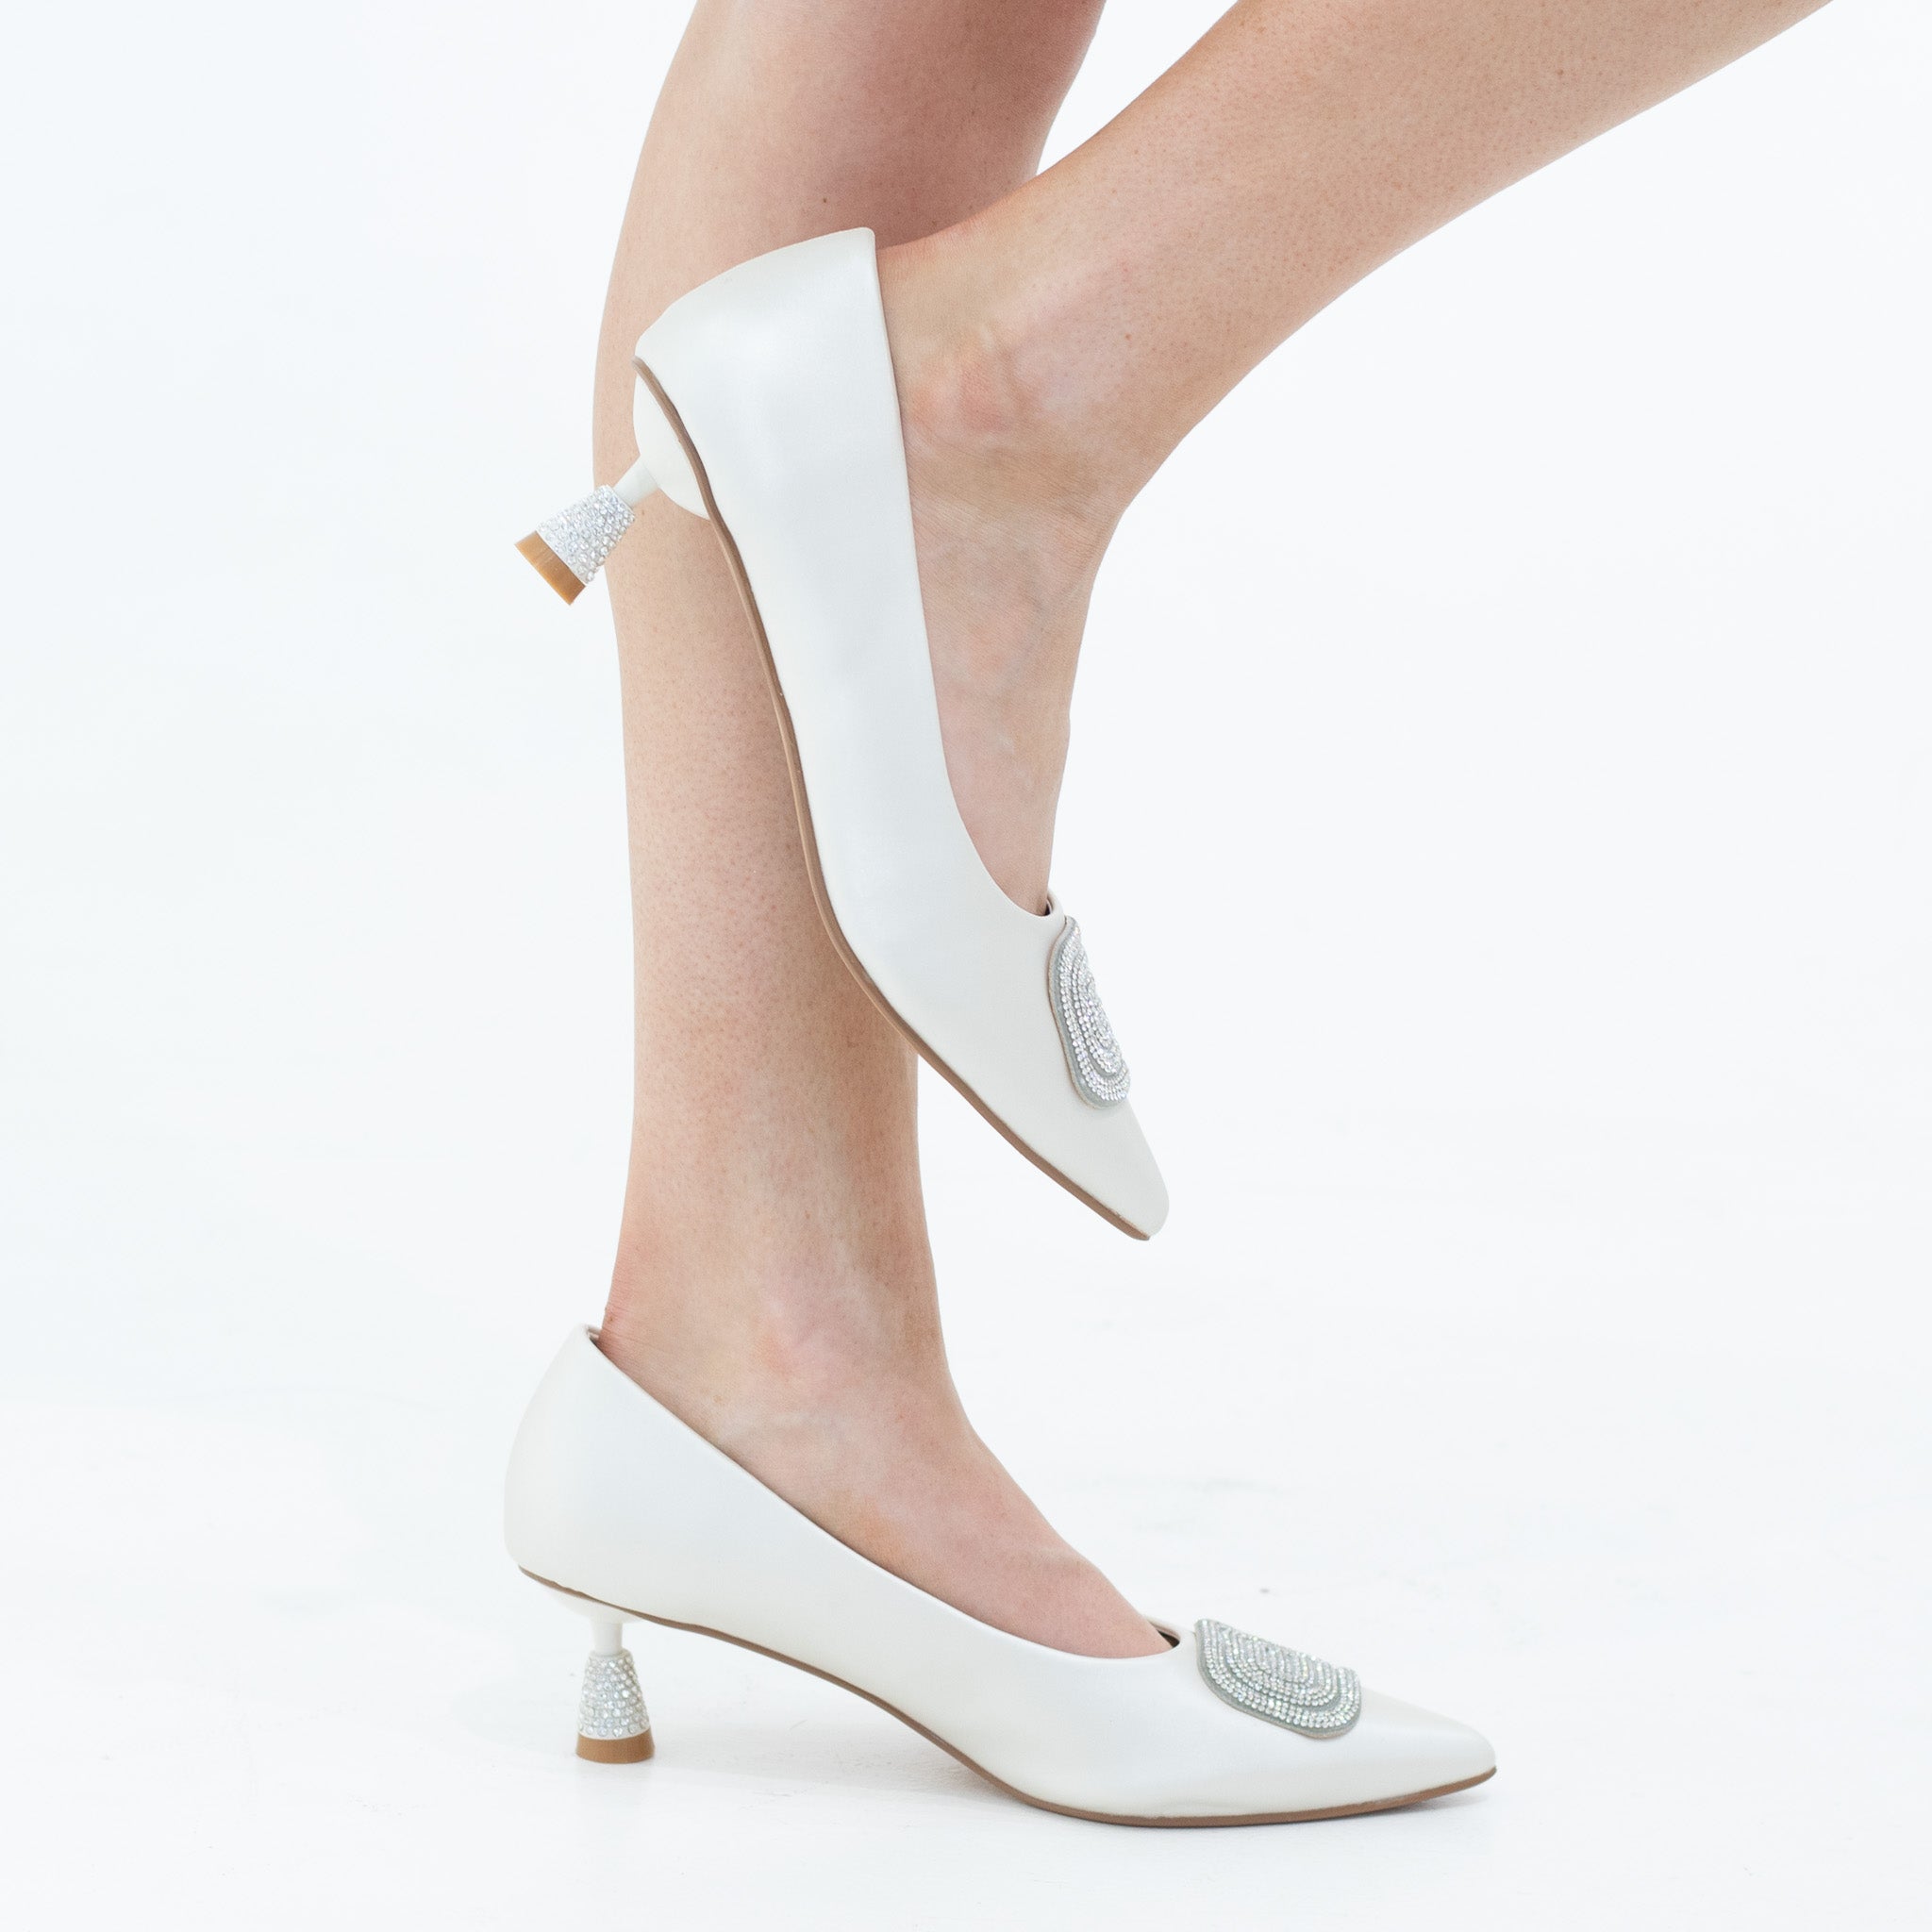 Hayko 5cm heel satin court with sqr diamante trim off-white